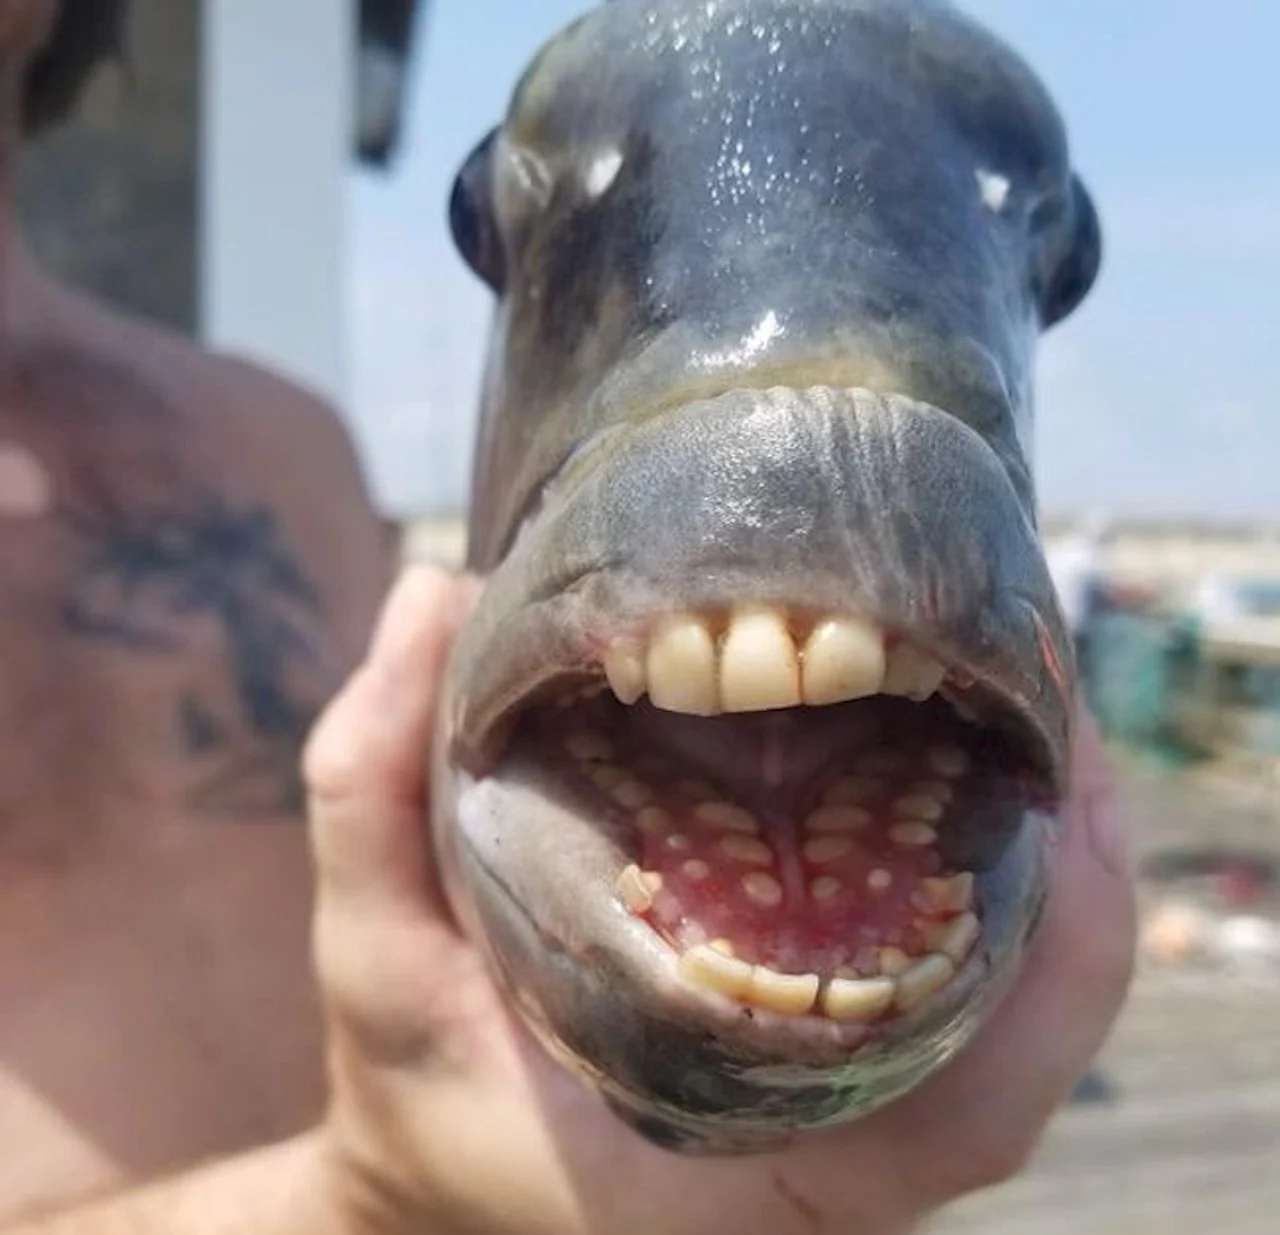 Fish sporting human-like teeth charms angler, lights up social